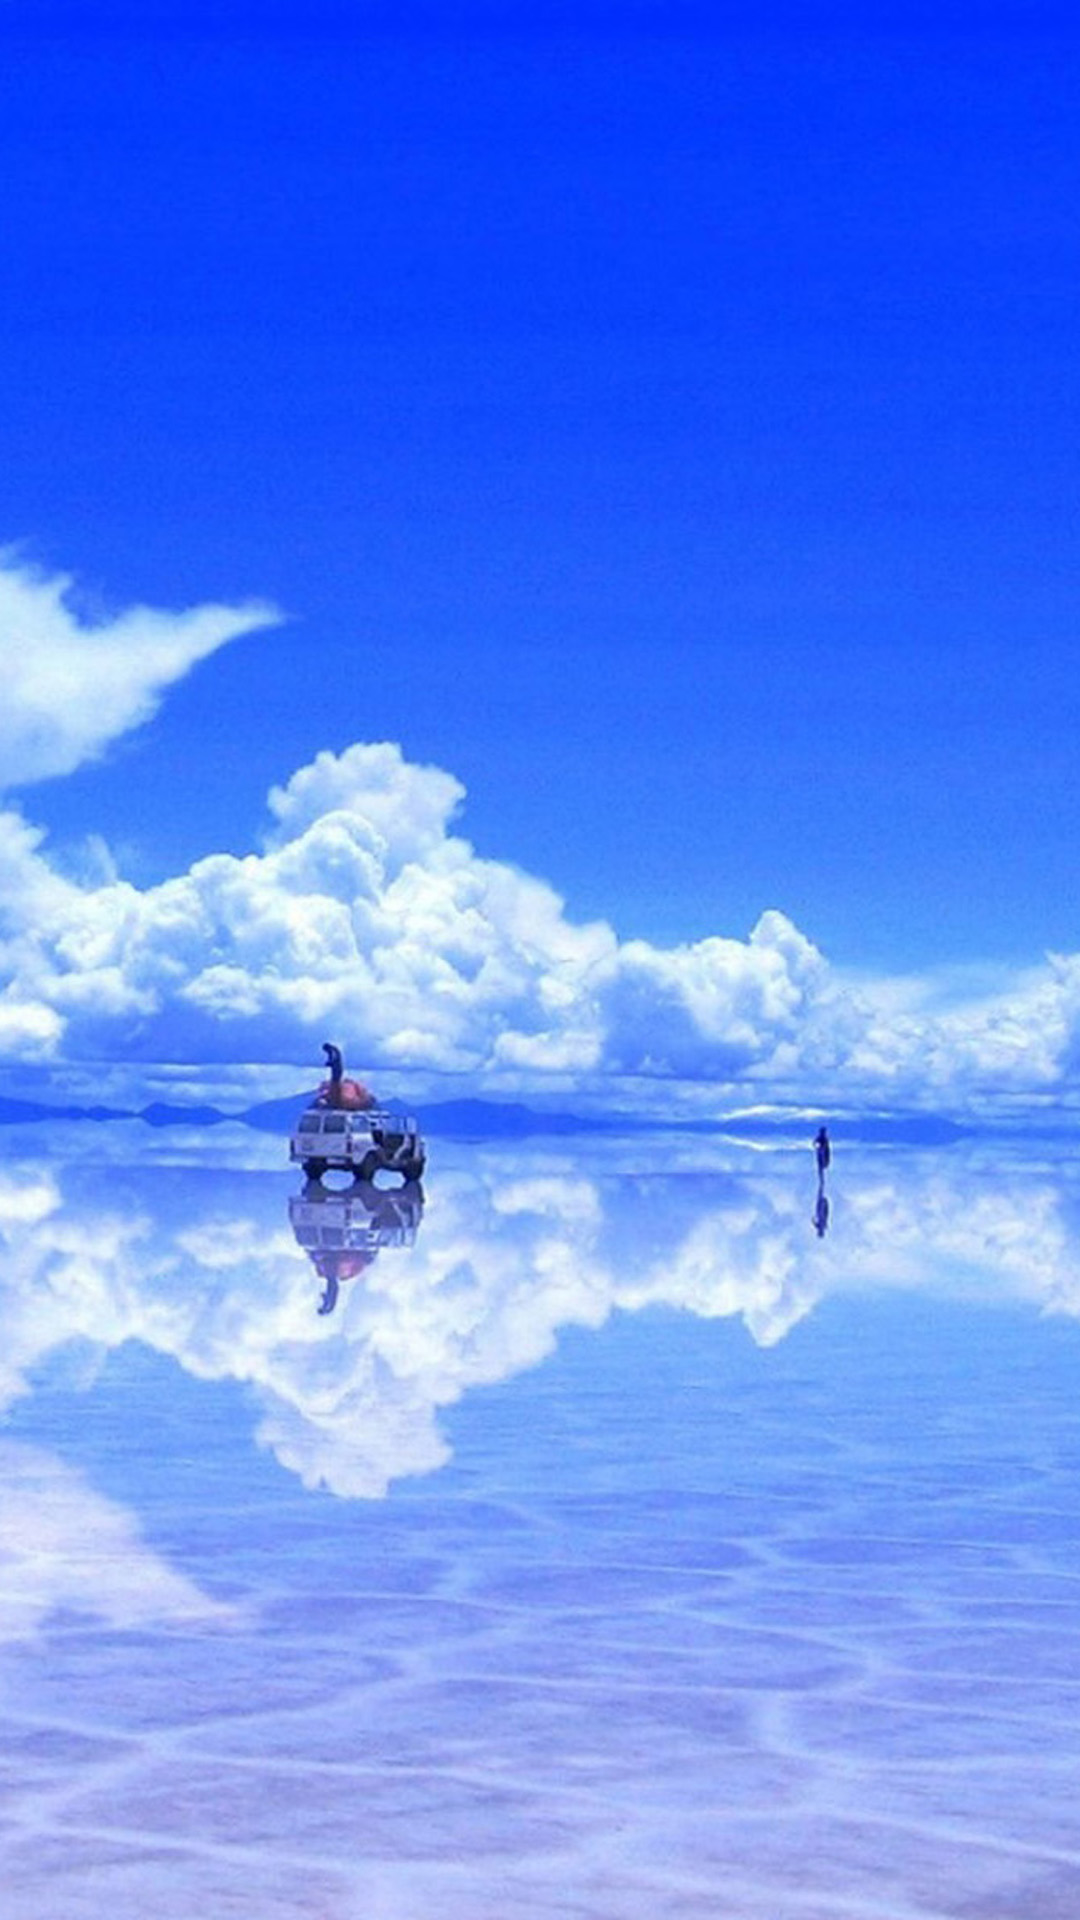 Sea Mirror Skyscape iPhone Wallpaper